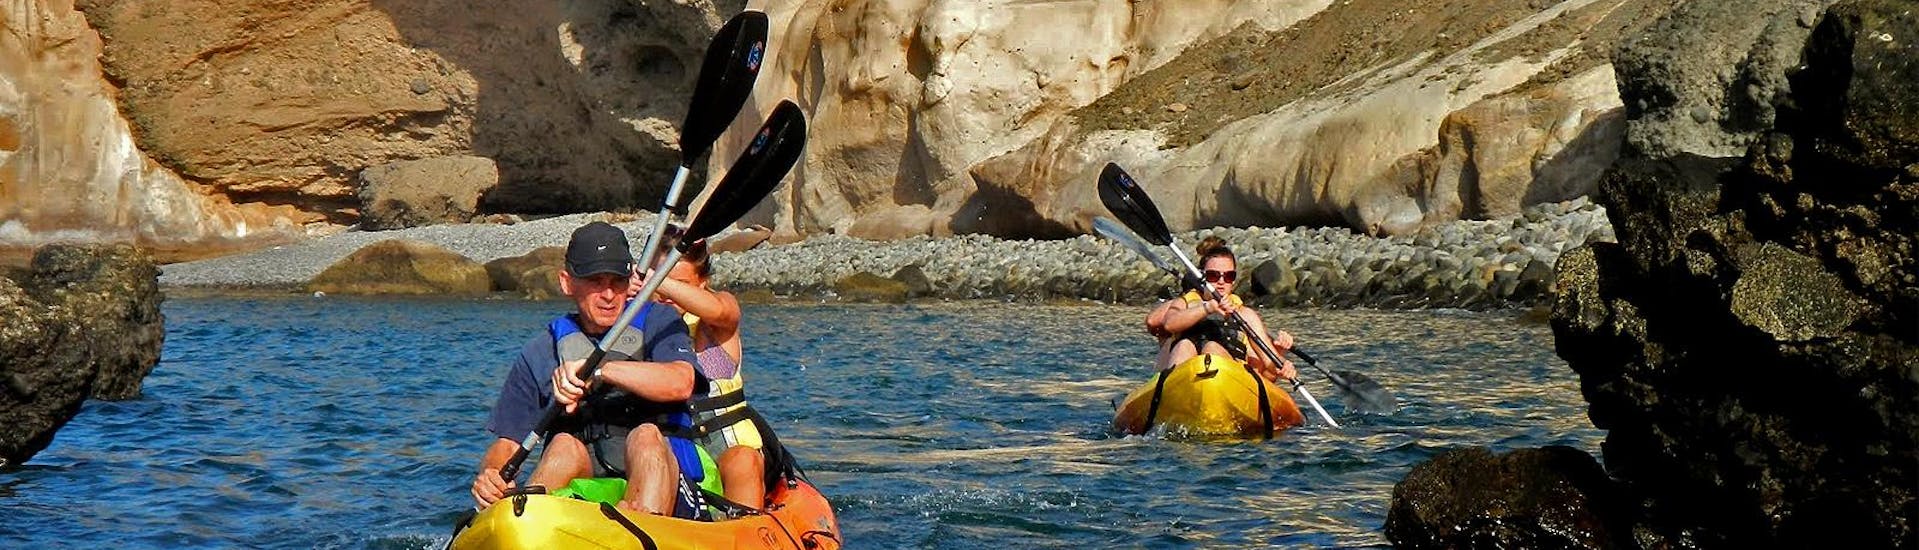 Durante el Kayak en la Costa Sur en Gran Canaria los participantes reman en el hermoso mar y admiran las formaciones rocosas junto con el Mojo Picón Aventura.